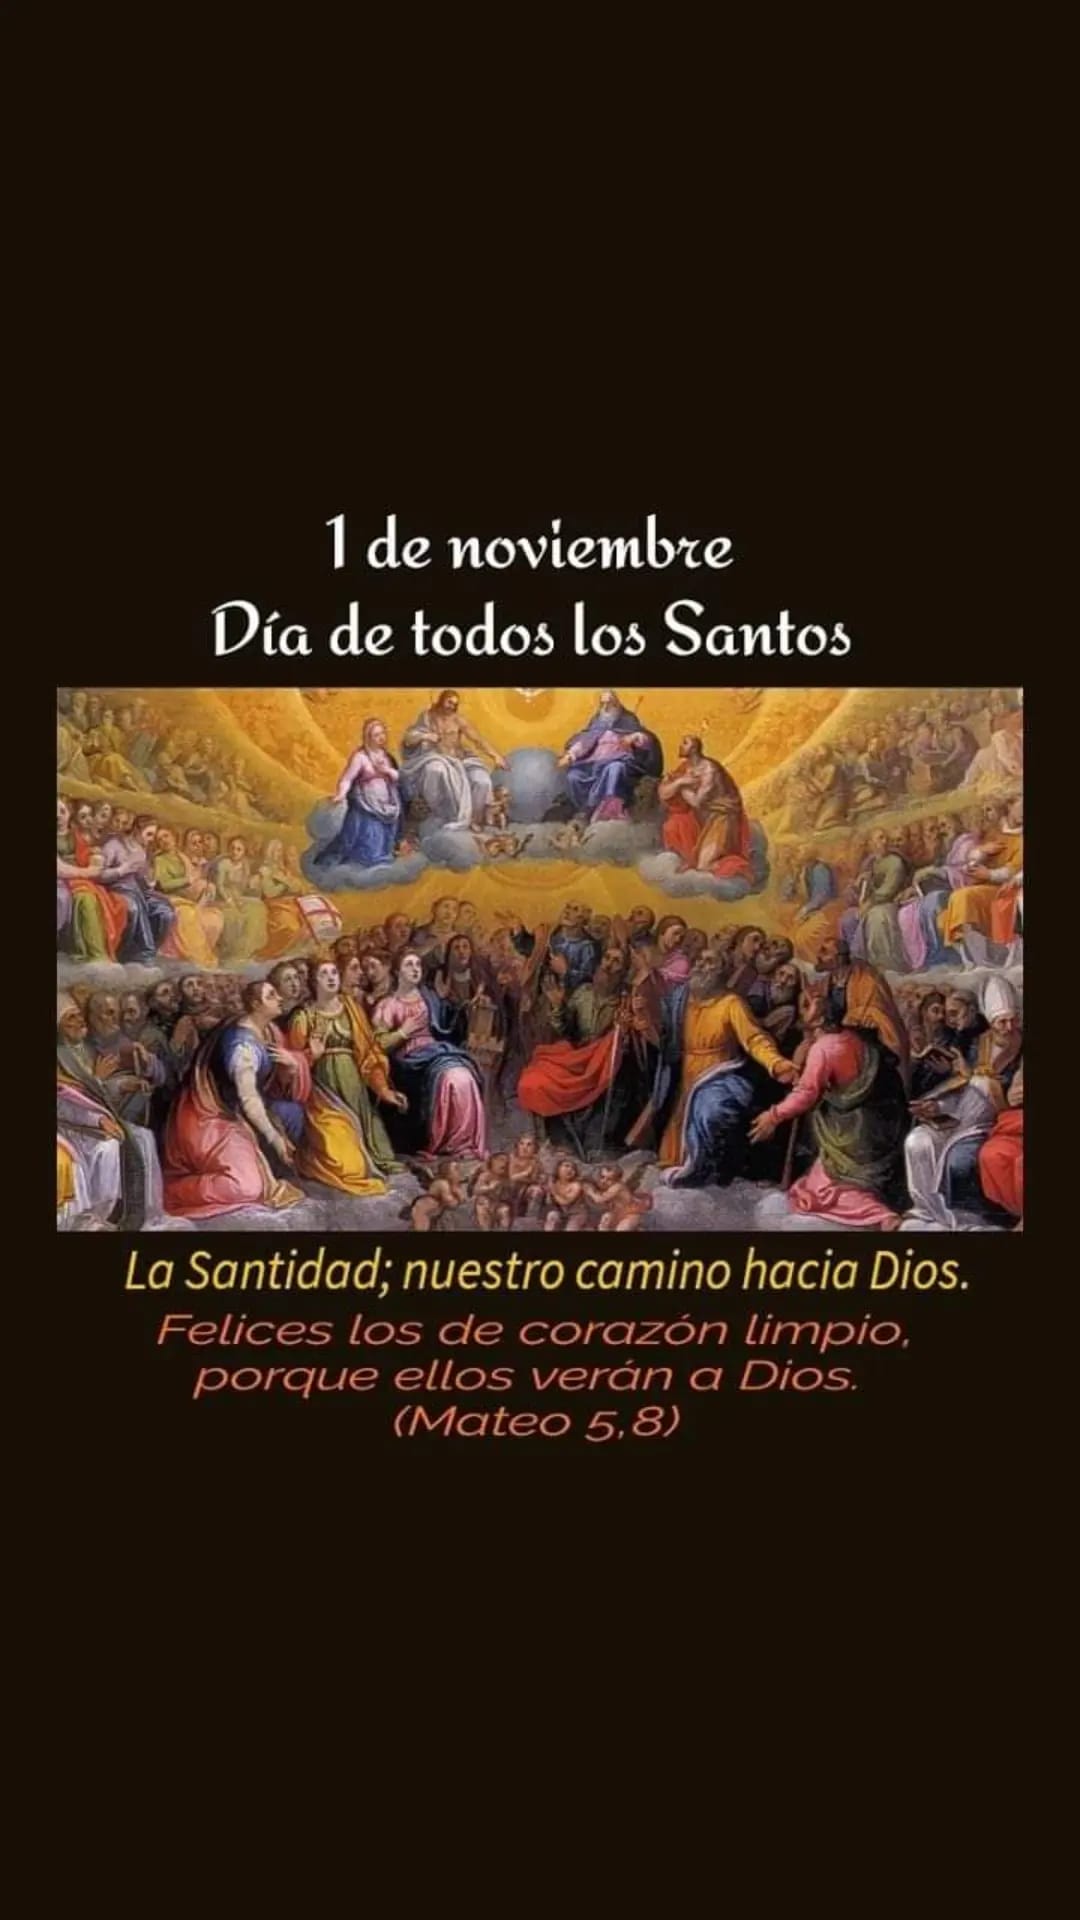 Fiesta de Todos los Santos